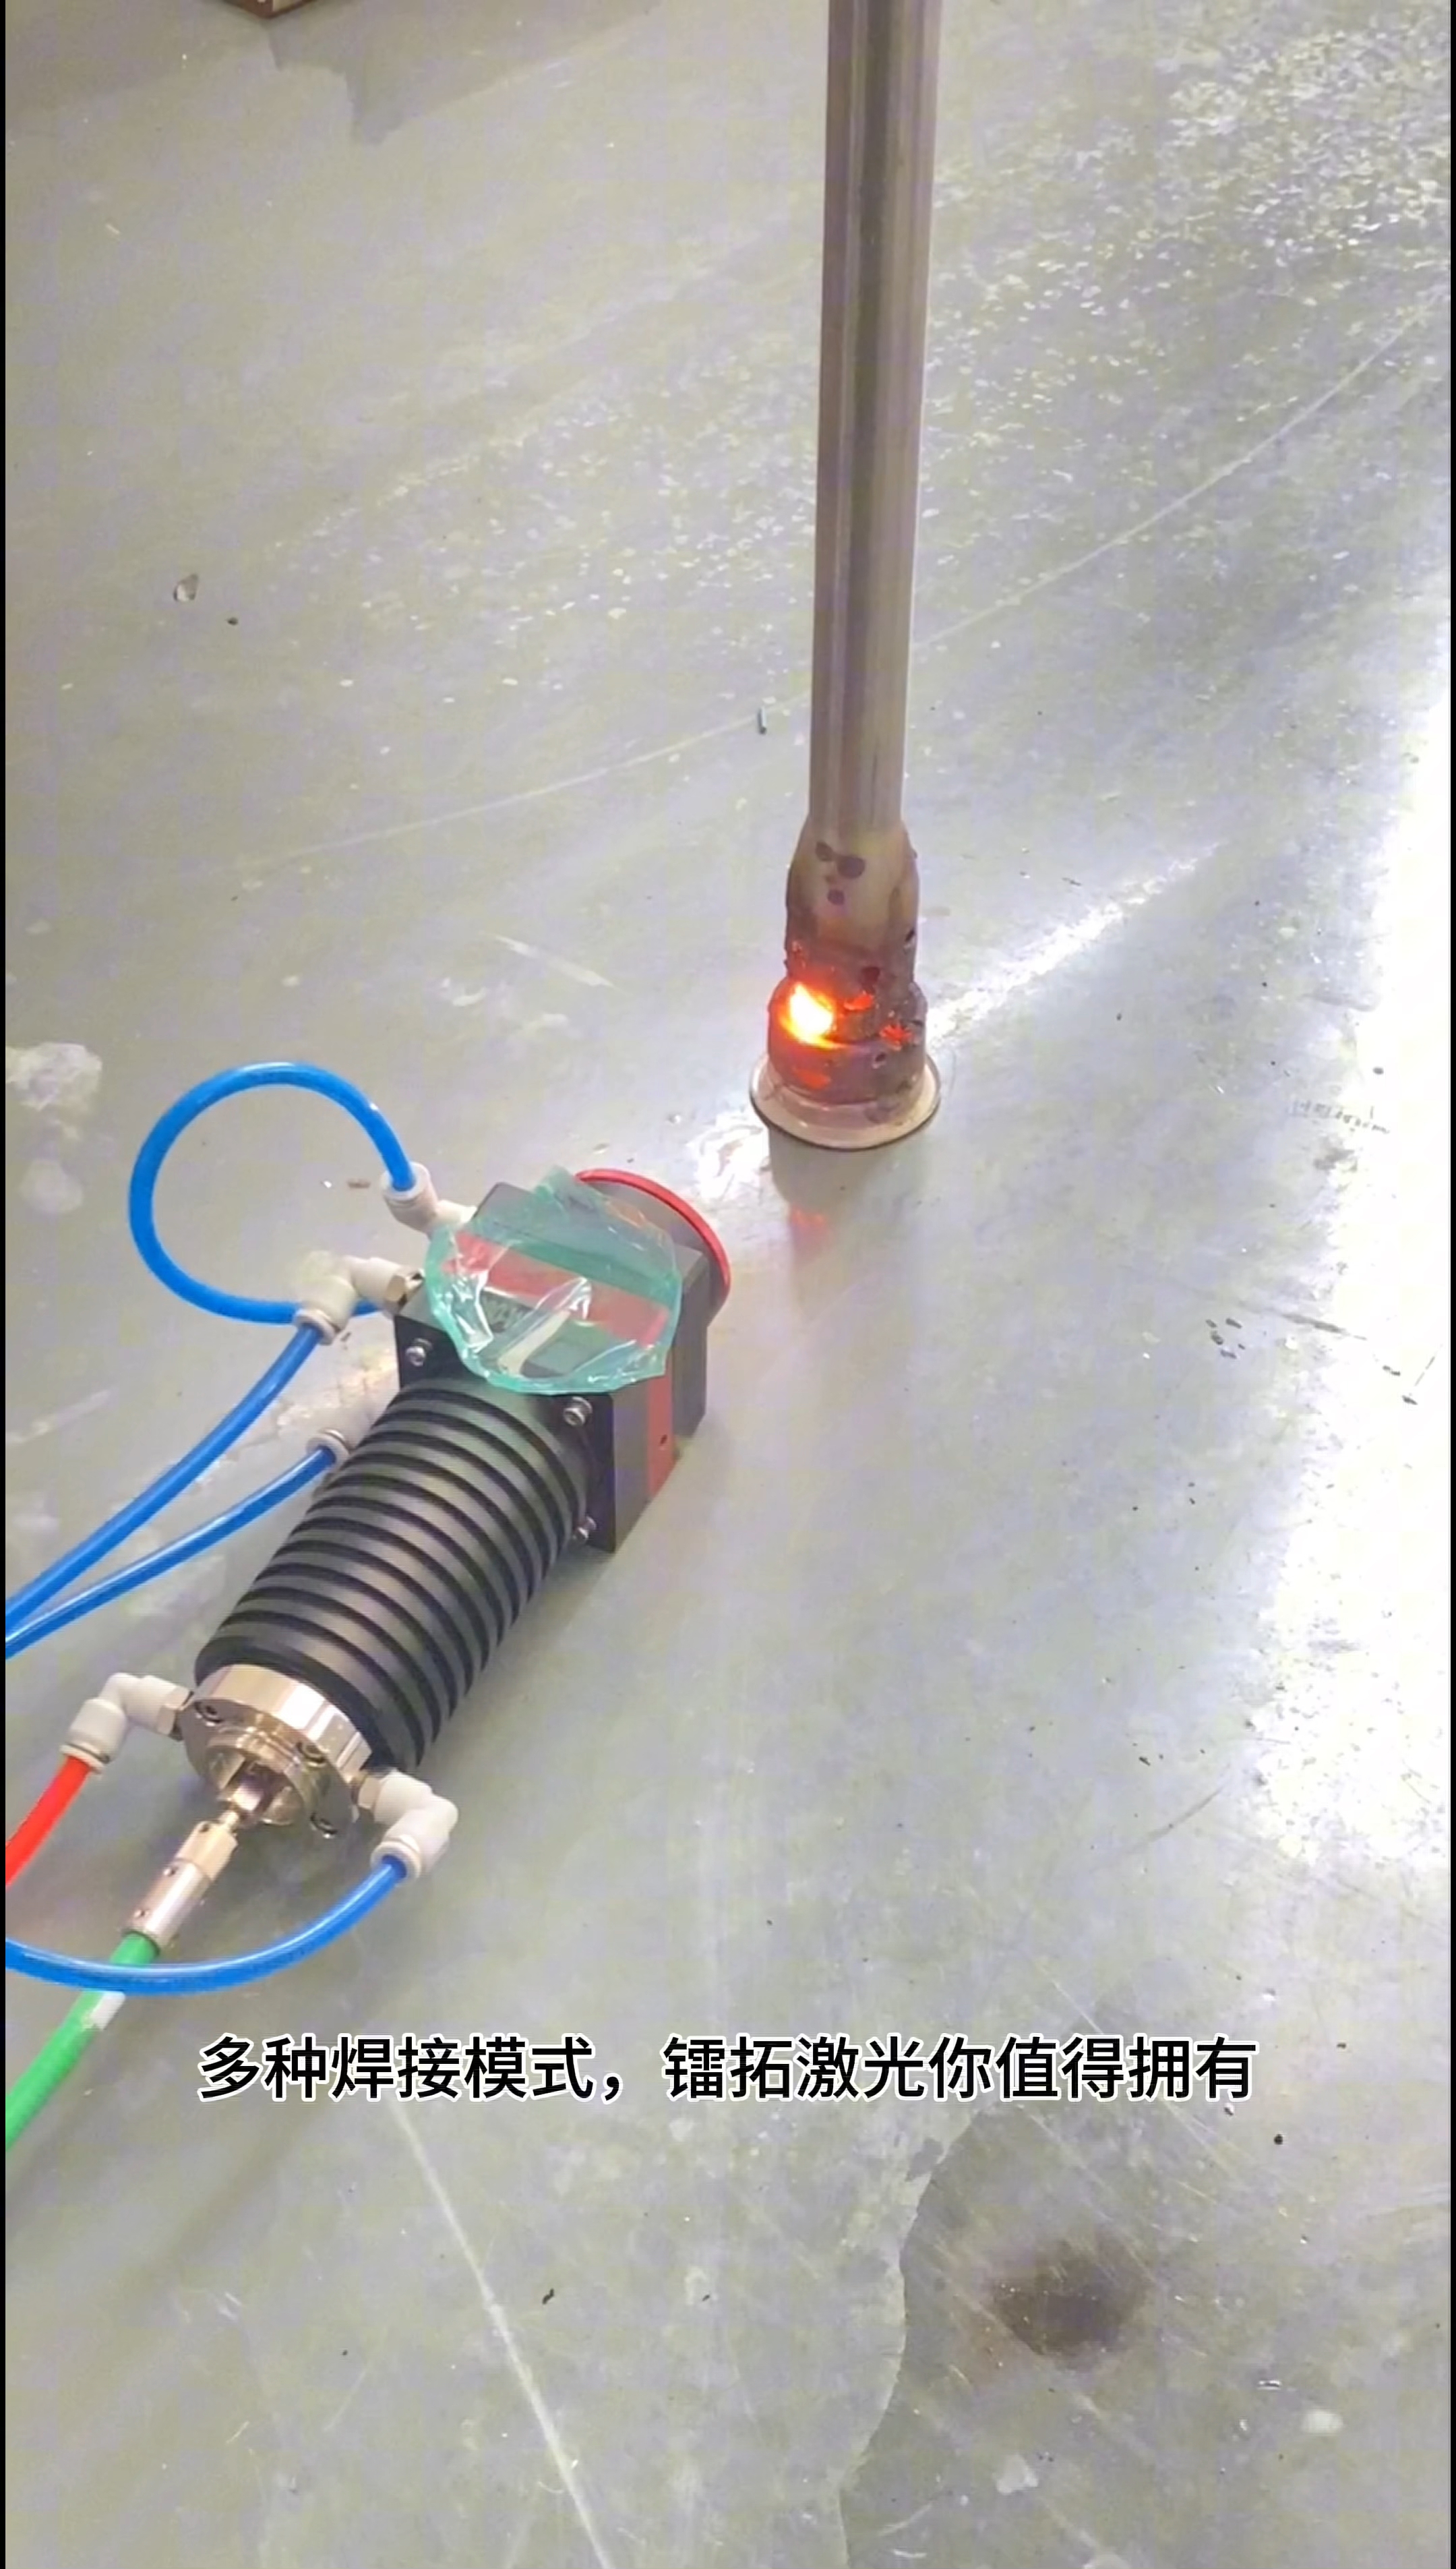 鐳拓激光1500w安裝測試出光過程#激光焊接機#手持激光焊接機#